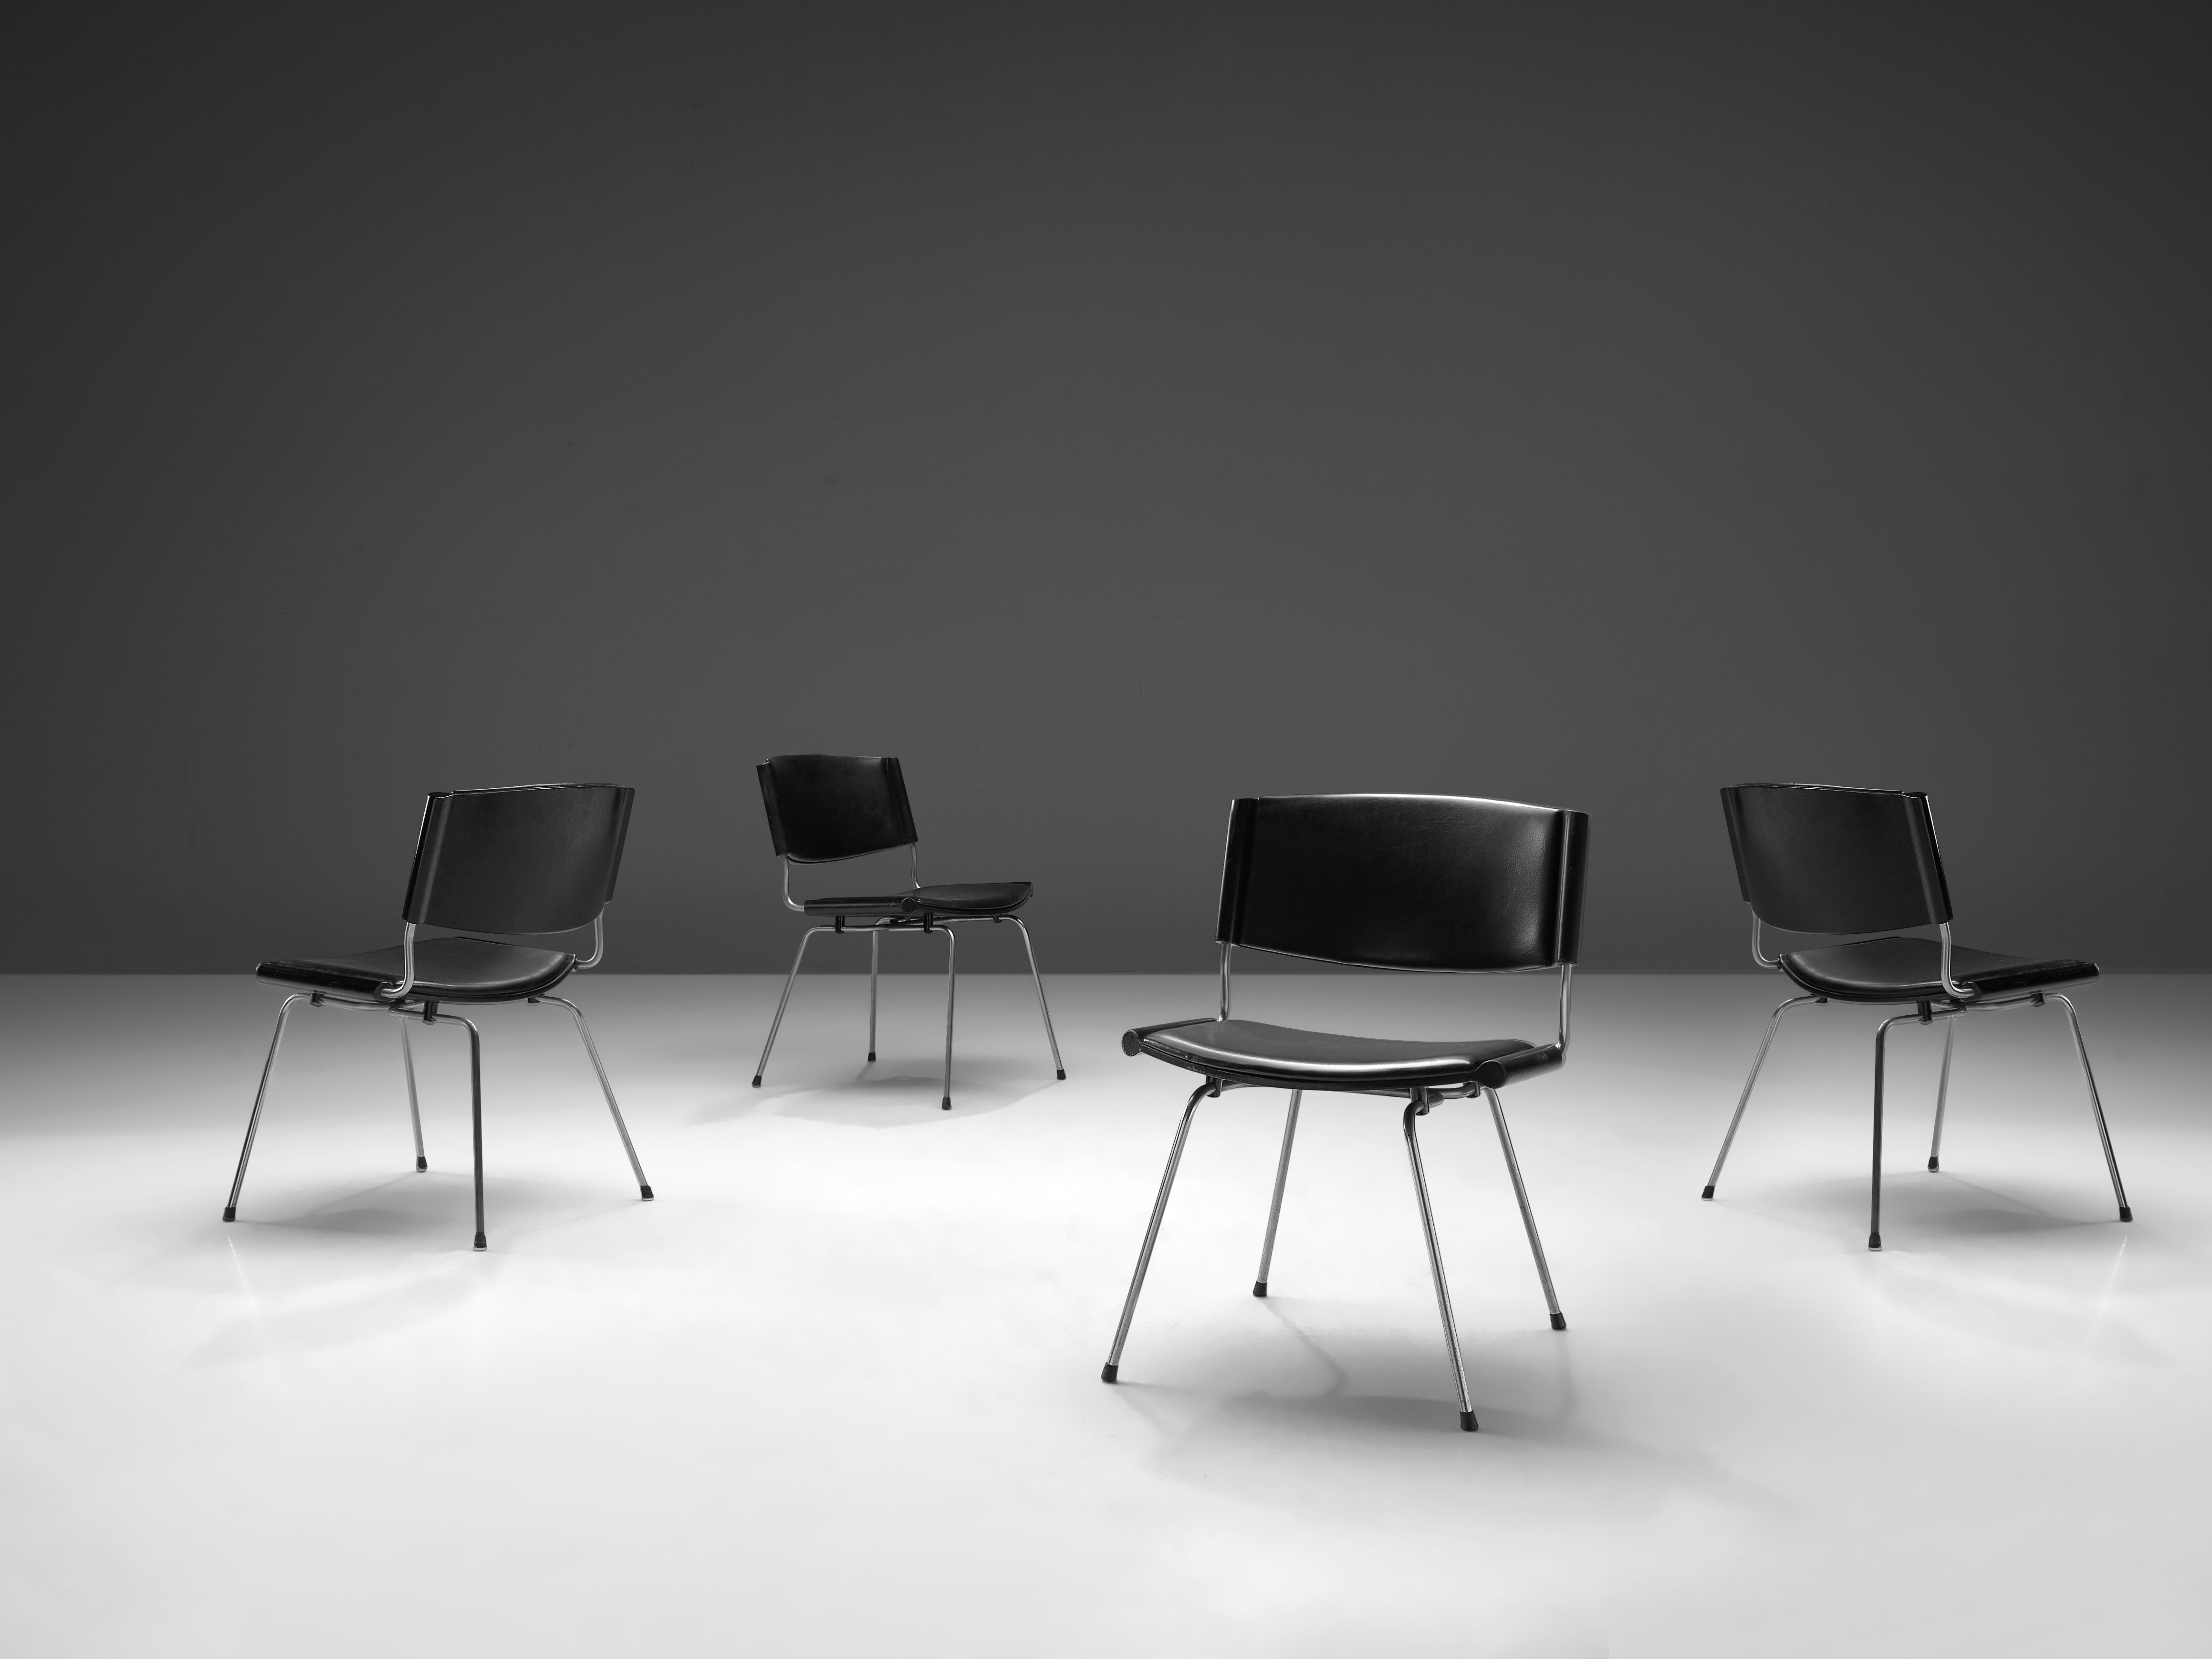 Nanna Ditzel, chaises 'Badminton', acier, cuir, bois, Danemark, design 1958, production 1960s.

Cet ensemble de cinq chaises de Nanna Ditzel et Jørgen Ditzel a été conçu en 1958, à l'origine pour l'hôpital du comté de Glostrup, près de Copenhague,